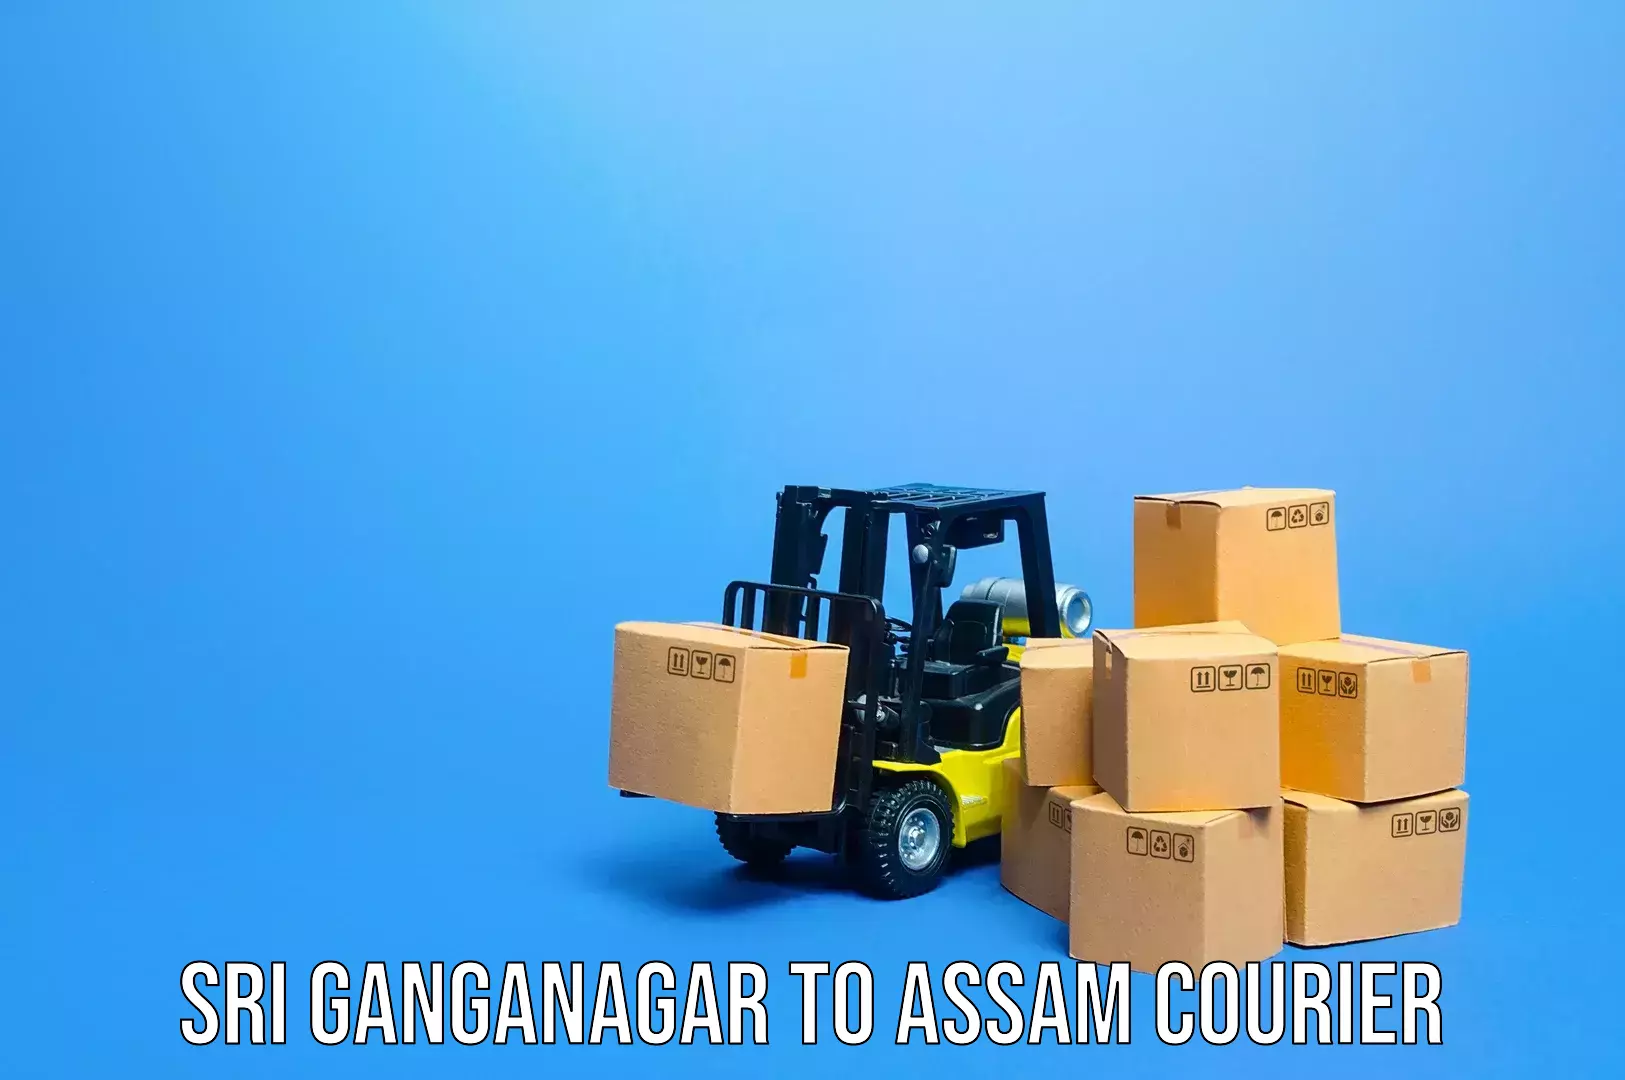 Excess baggage transport in Sri Ganganagar to Dhemaji